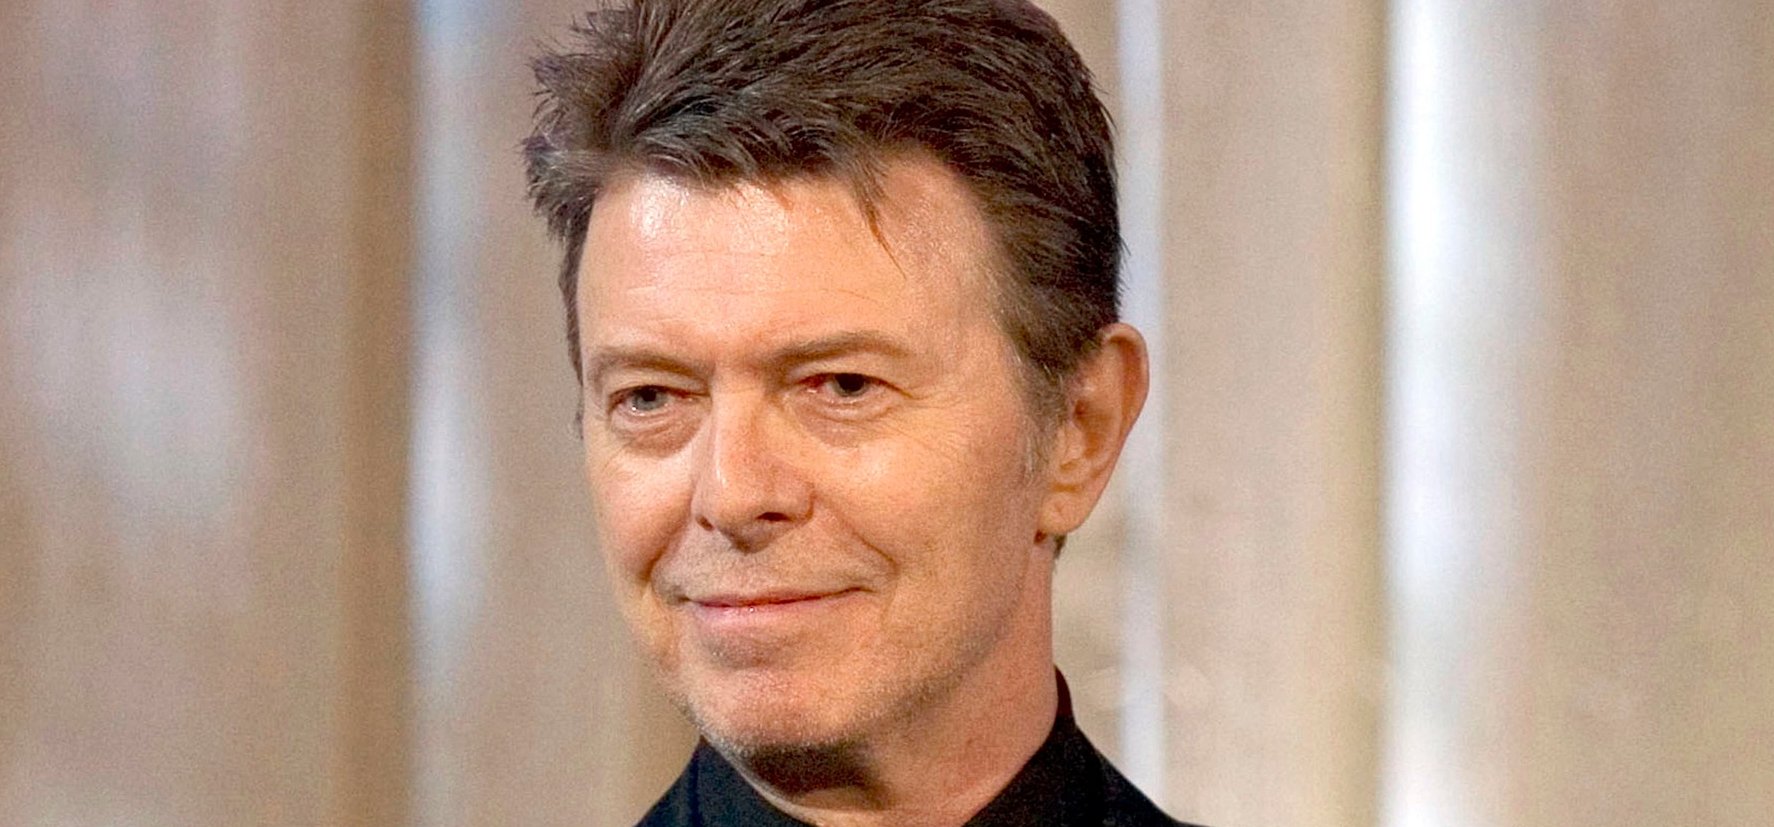 Így néz ki most David Bowie 22 éves lánya, aki megható emléket talált a legendáról